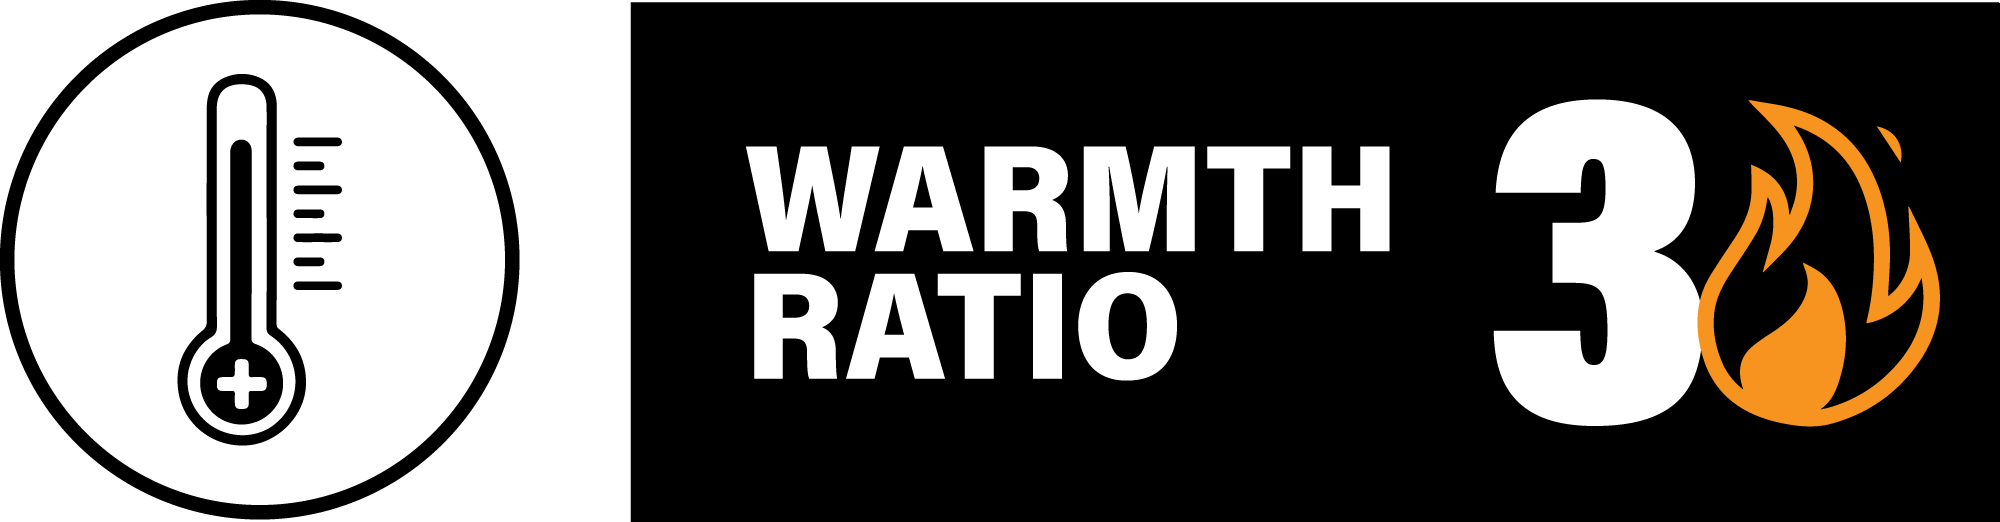 Warmth Ratio 2